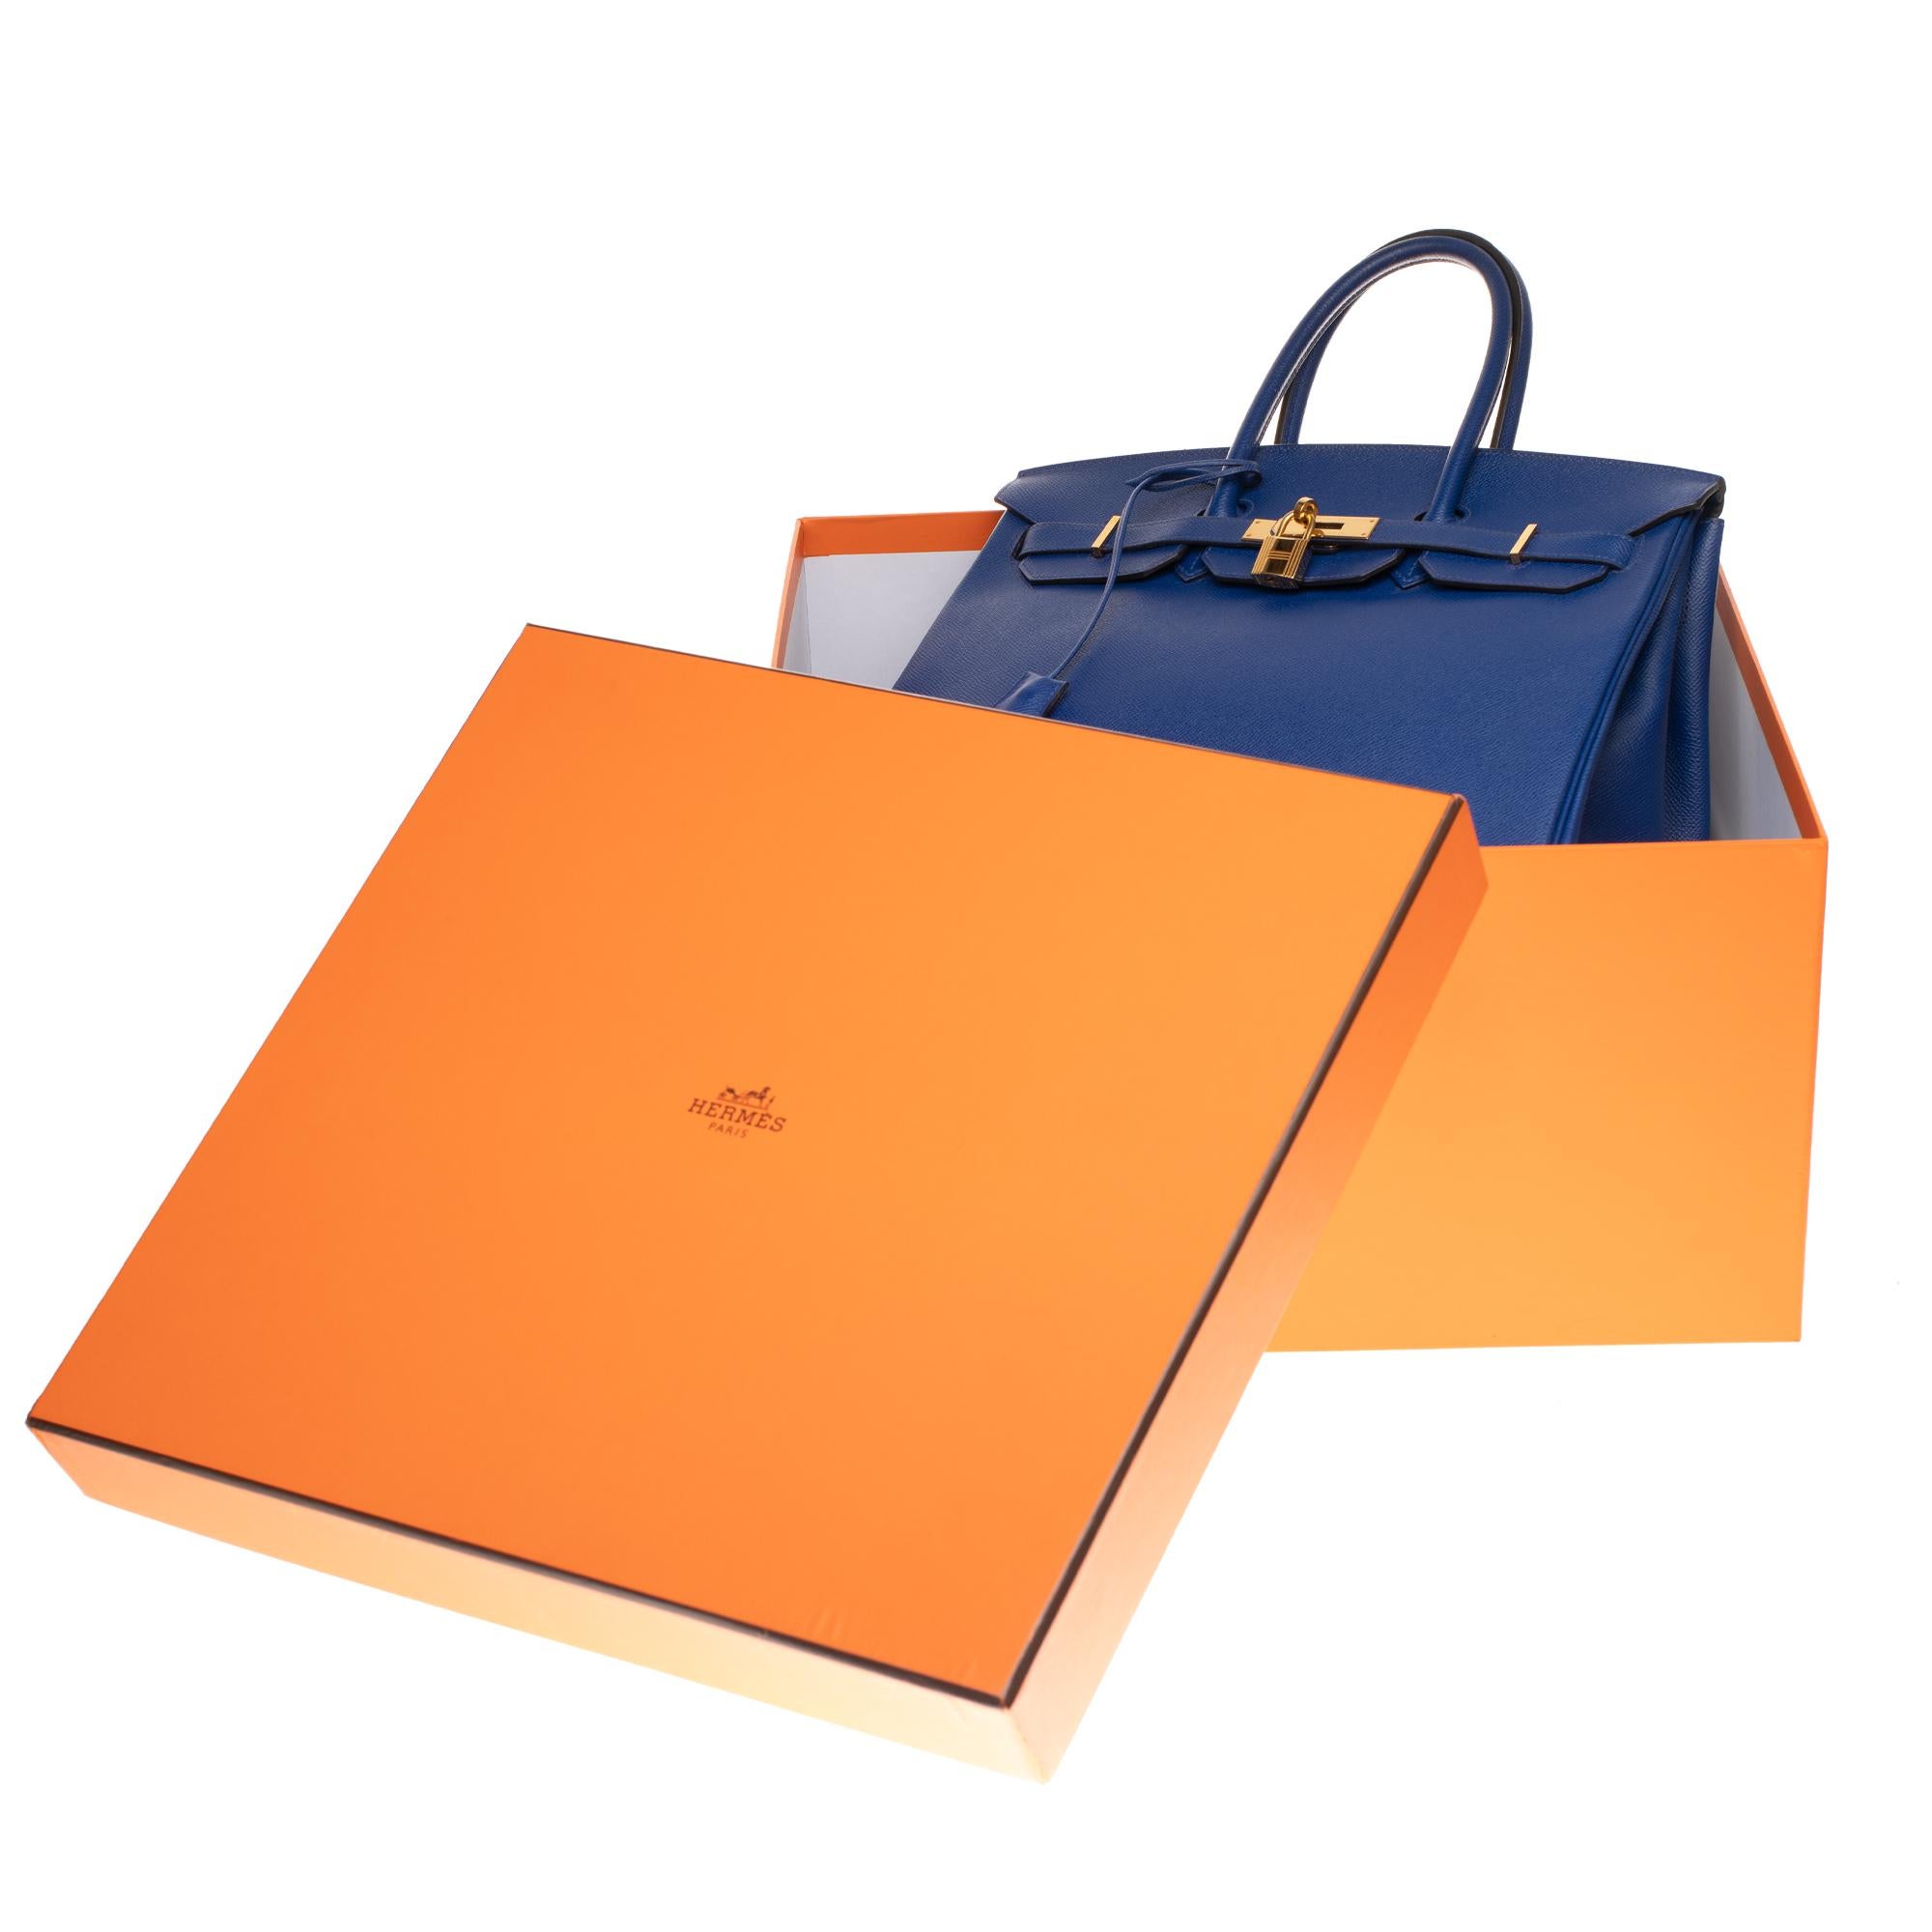 Hermès Birkin 35 handbag in bleu électrique epsom leather, GHW 5